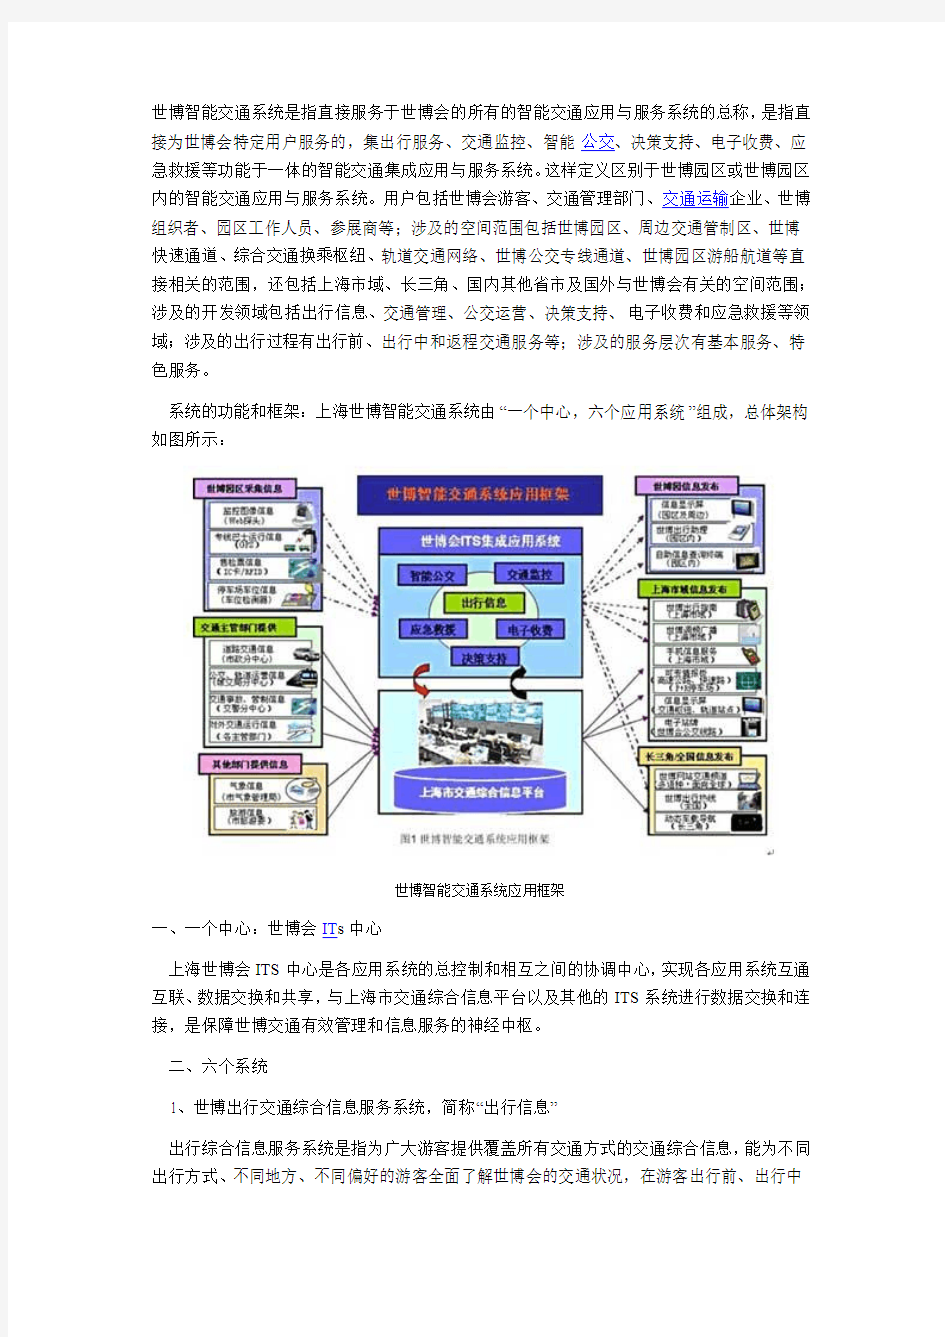 2010年上海世博智能交通系统方案(图)